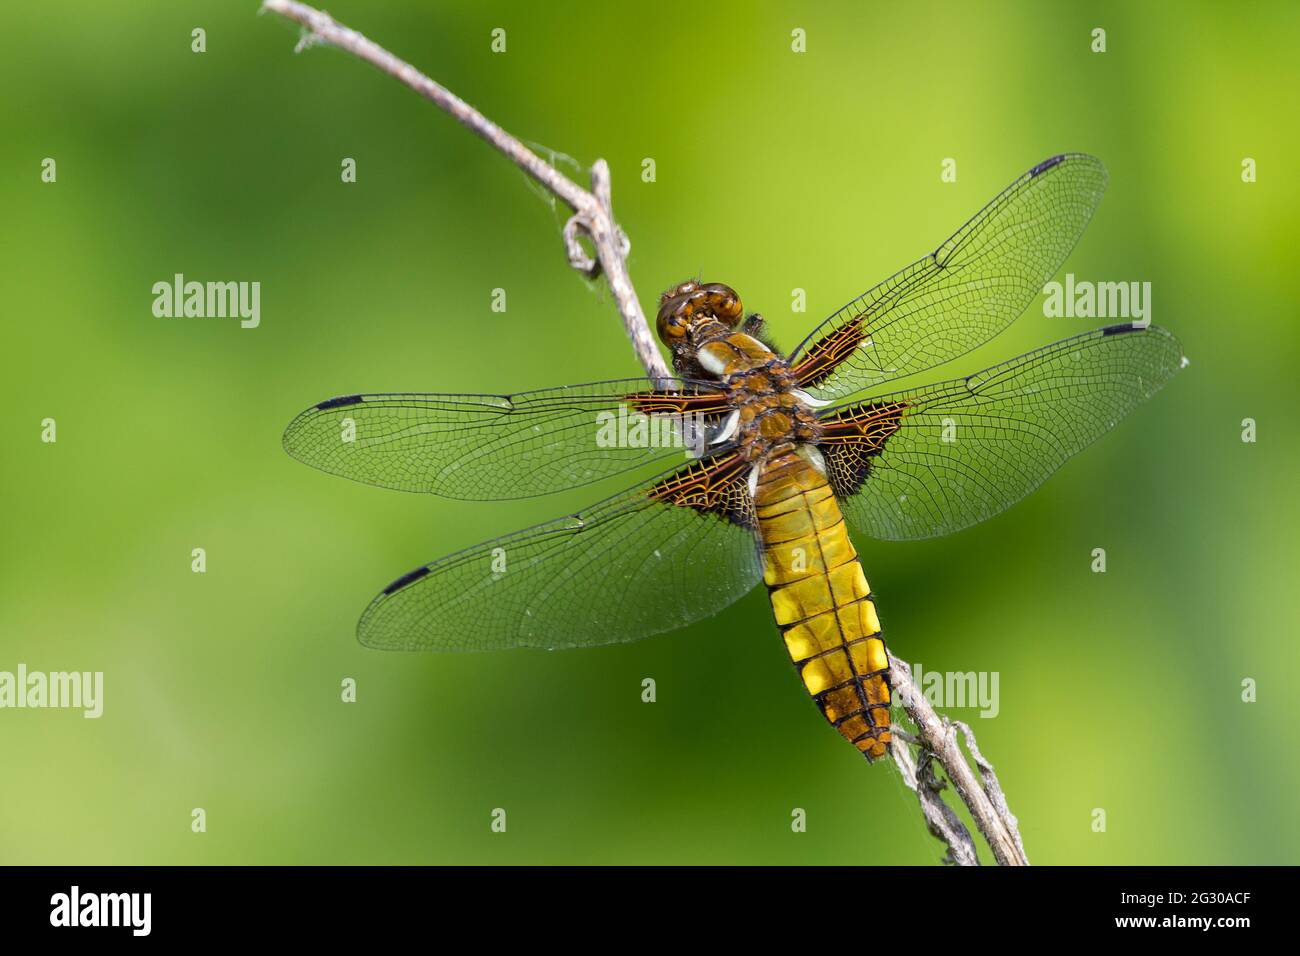 Caser à corps large, (libellula depressa) femelle libellule brun doré large abdomen aplati avec des taches jaunes sur les côtés marron base aux ailes tachetées Banque D'Images